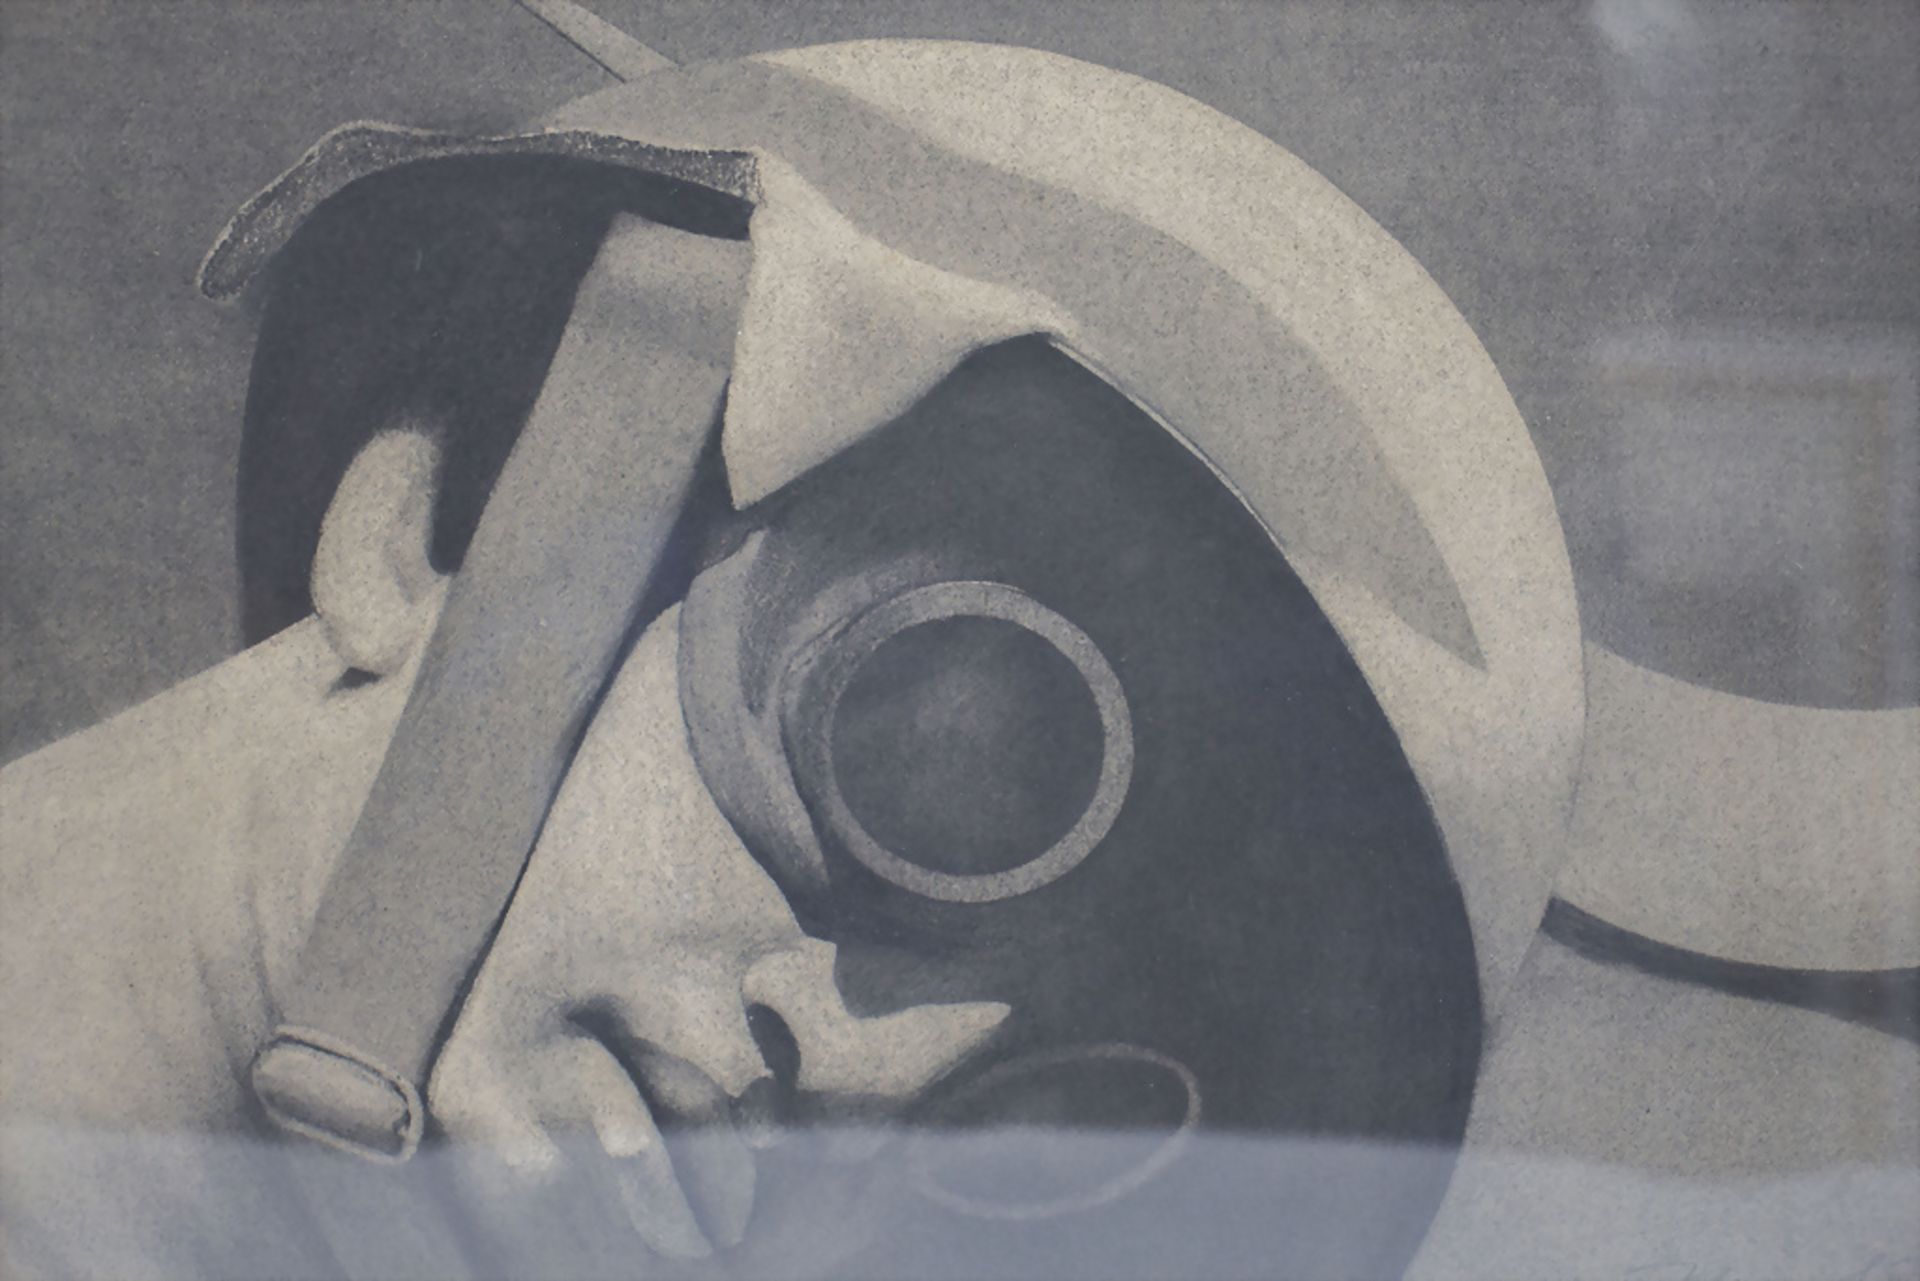 Unbekannter Signaturist des 20. Jh., 'Der Stahlhelmträger' / 'The steal helmet wearer', 1968 - Image 4 of 7